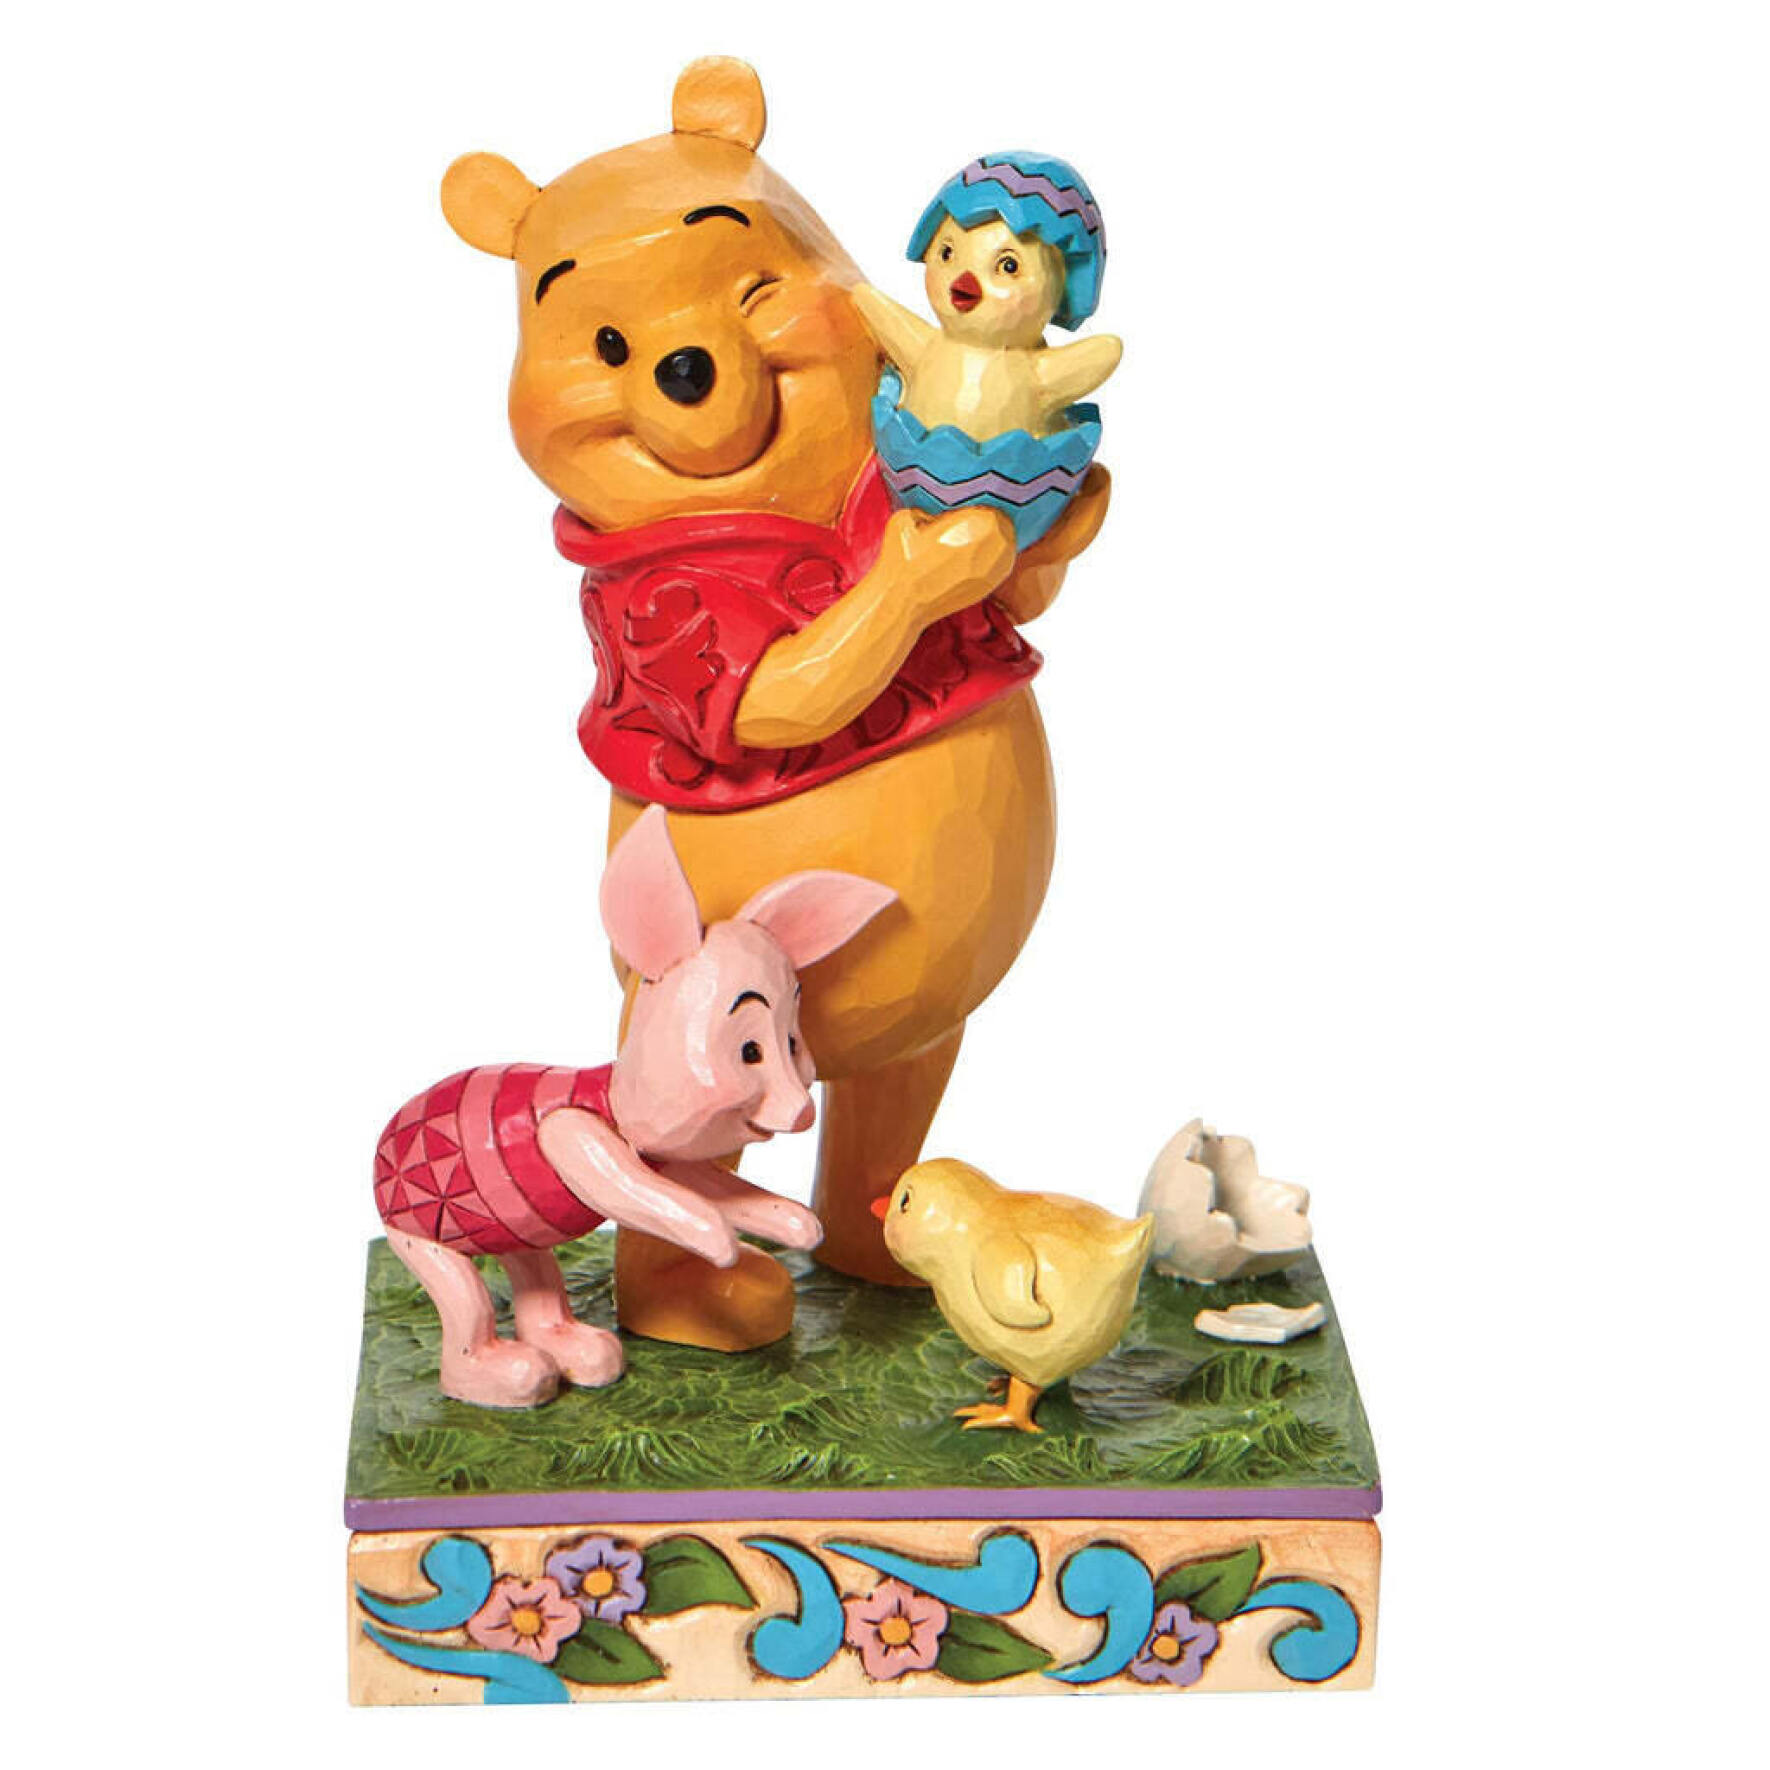  فیگور پو و پیگلت Pooh & Piglet with Chick 6010103 